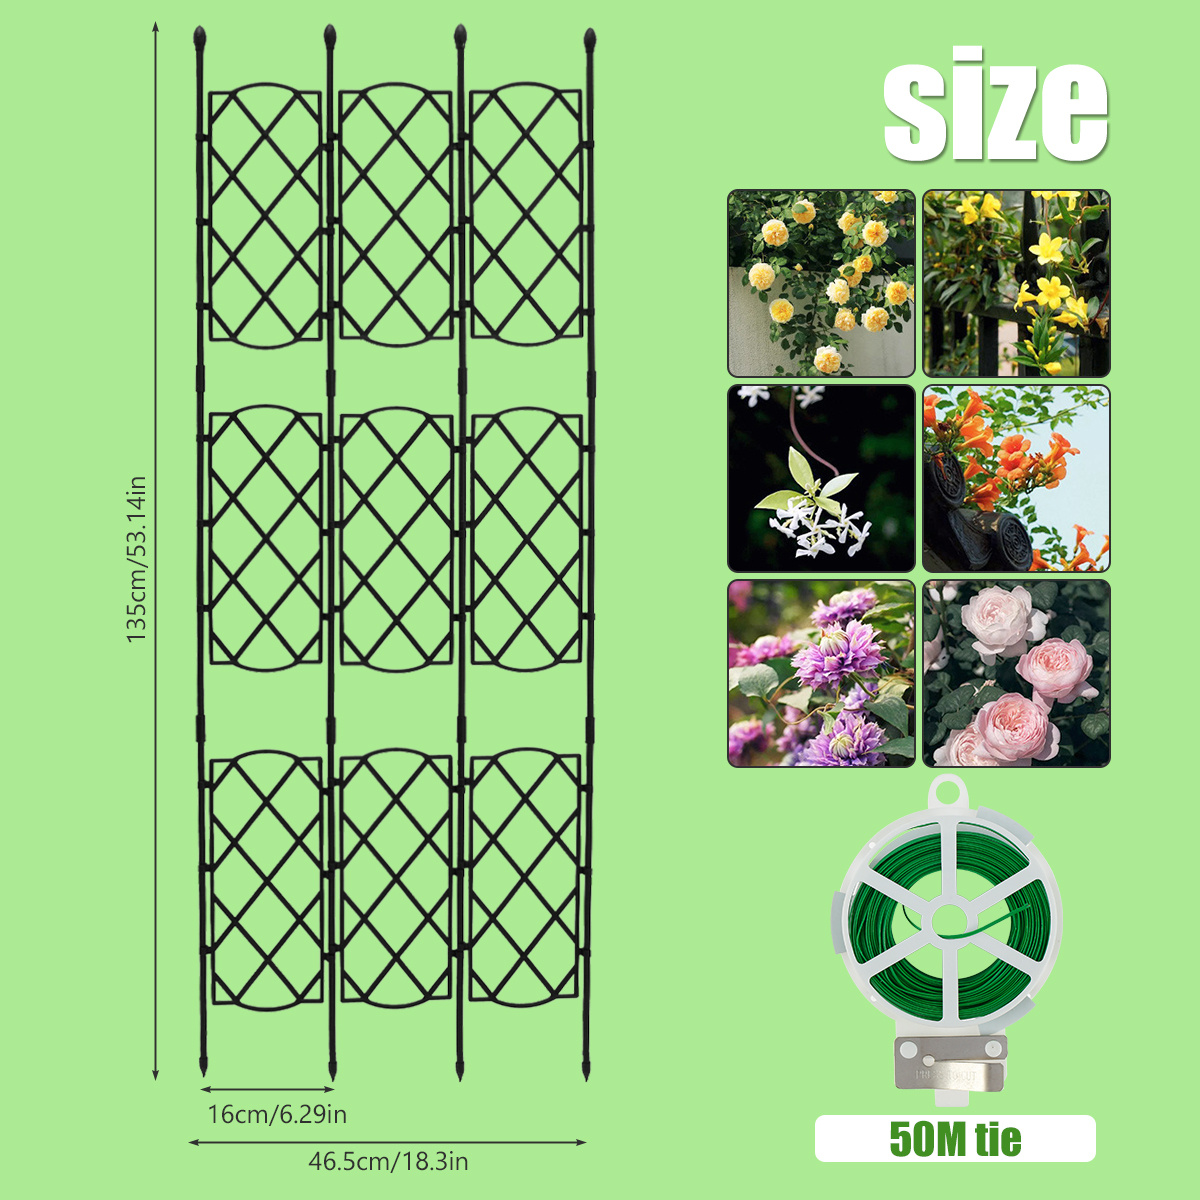 Treillis pour plantes grimpantes : 15 idées pour rehausser votre verdure -  tinktube